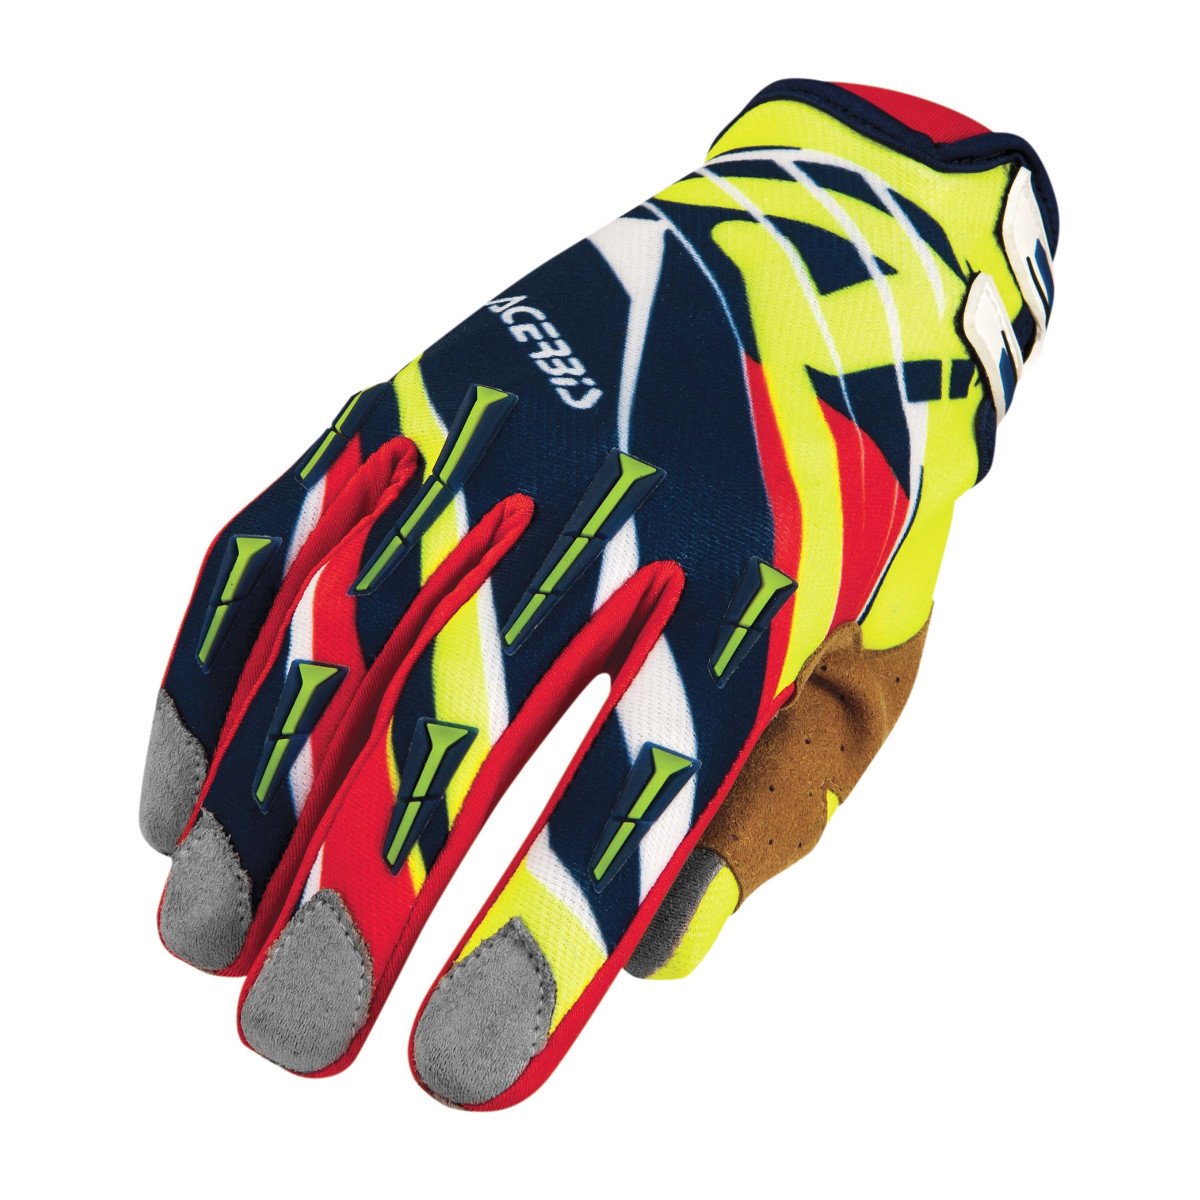 Acerbis Gloves MX X2 Blue/Red